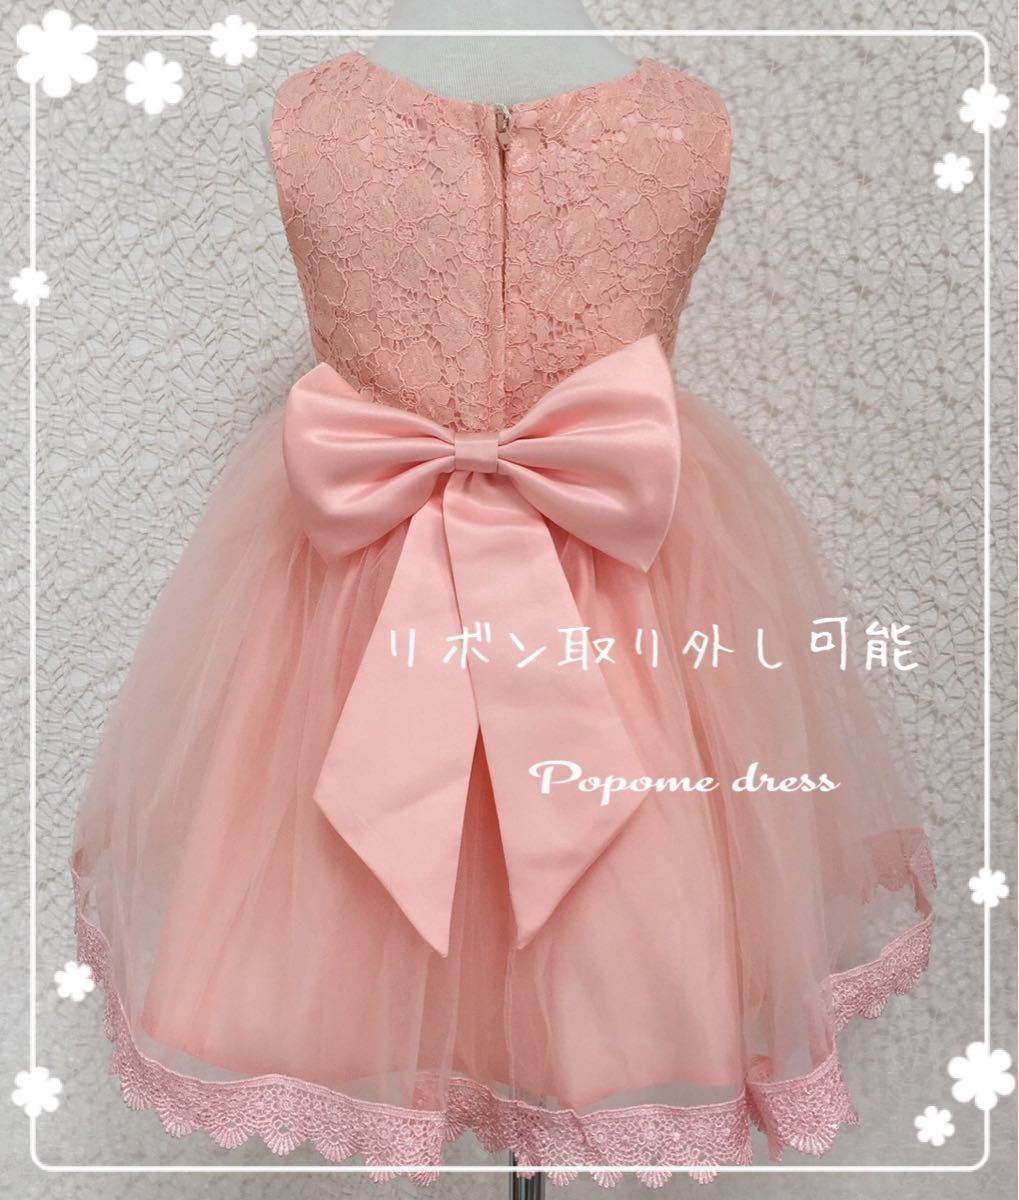  бесплатная доставка новый товар 90. розовый ребенок платье вышивка chu-ru платье ребенок платье свадьба презентация исполнение . ребенок одежда фотосъемка для фортепьяно презентация девочка платье 